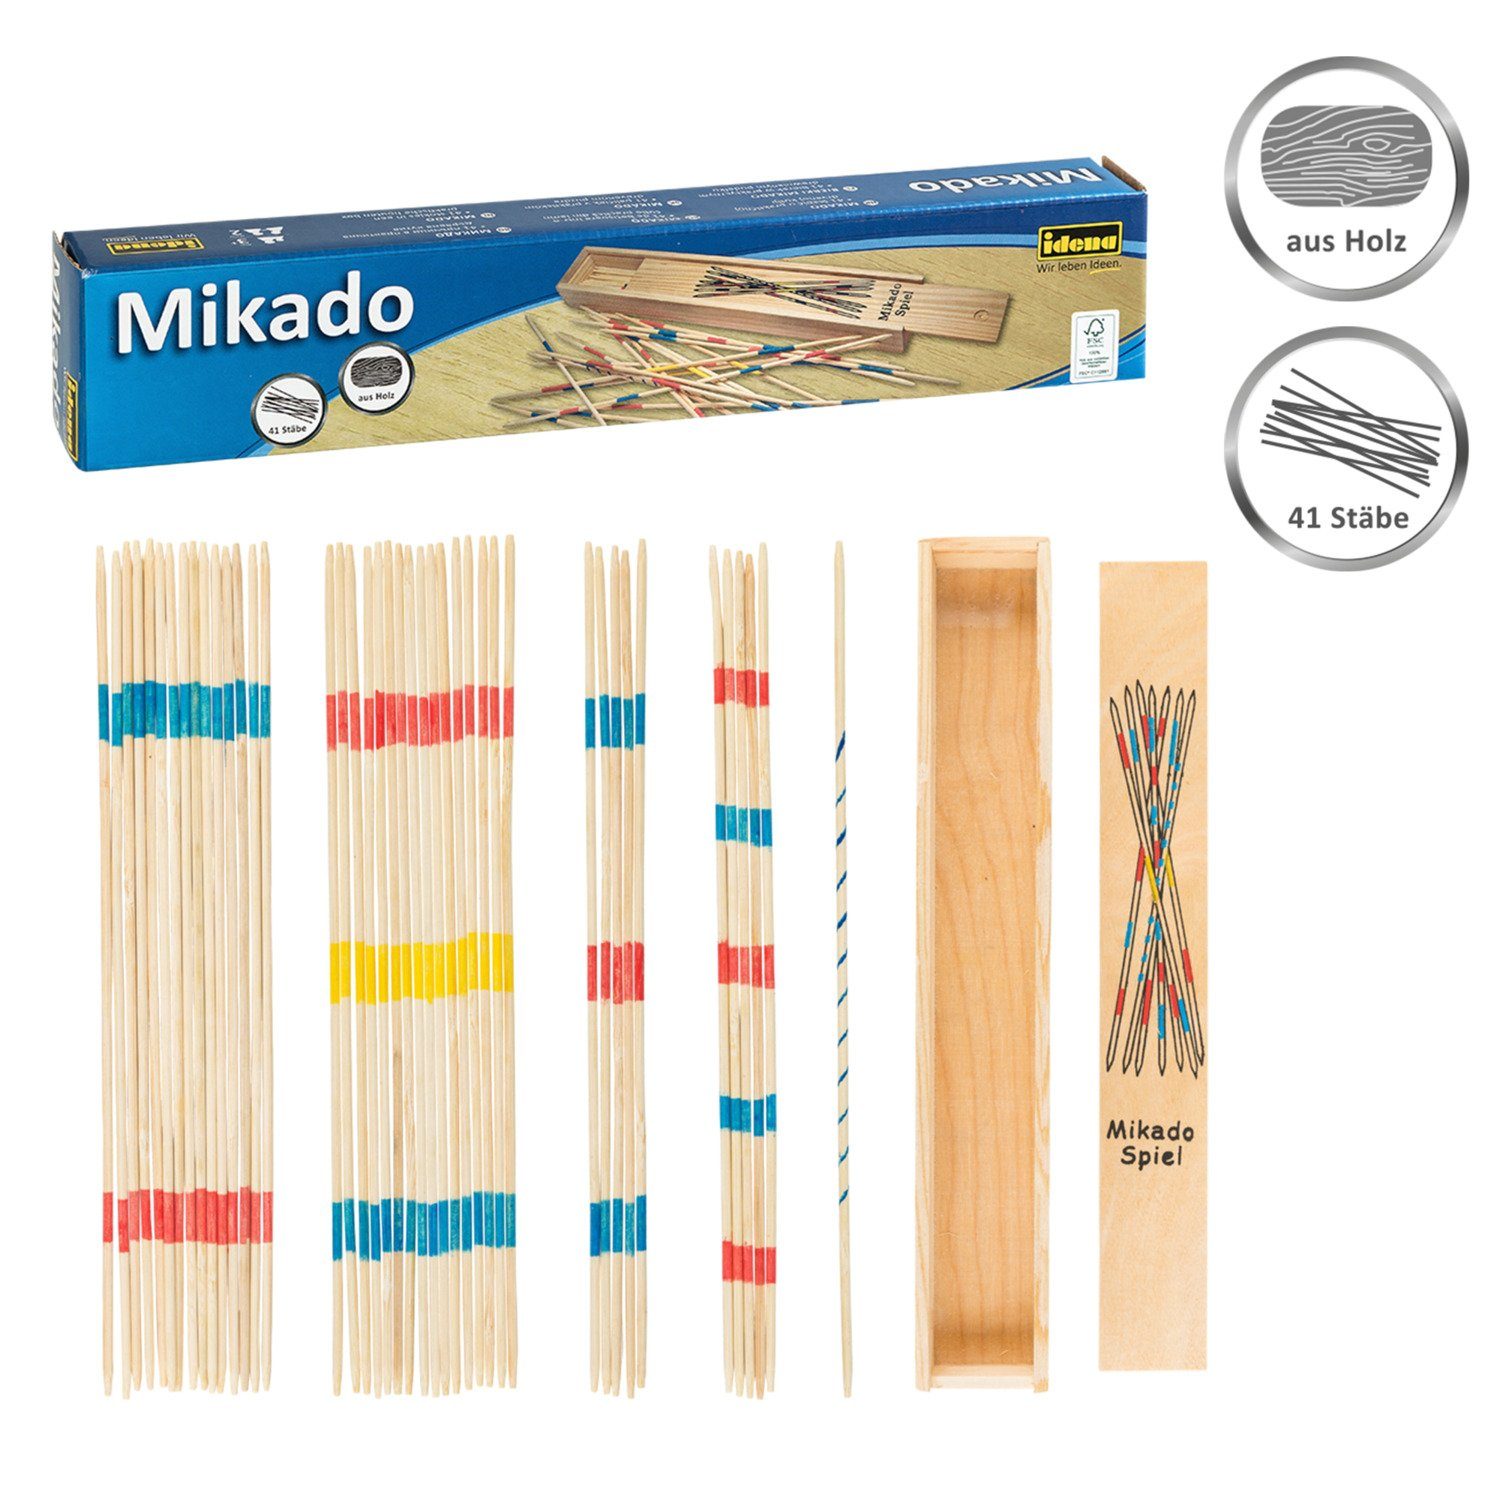 Idena Spiel, Idena 6060012 - Strategiespiel Mikado mit praktischer Holzbox, Bambus-